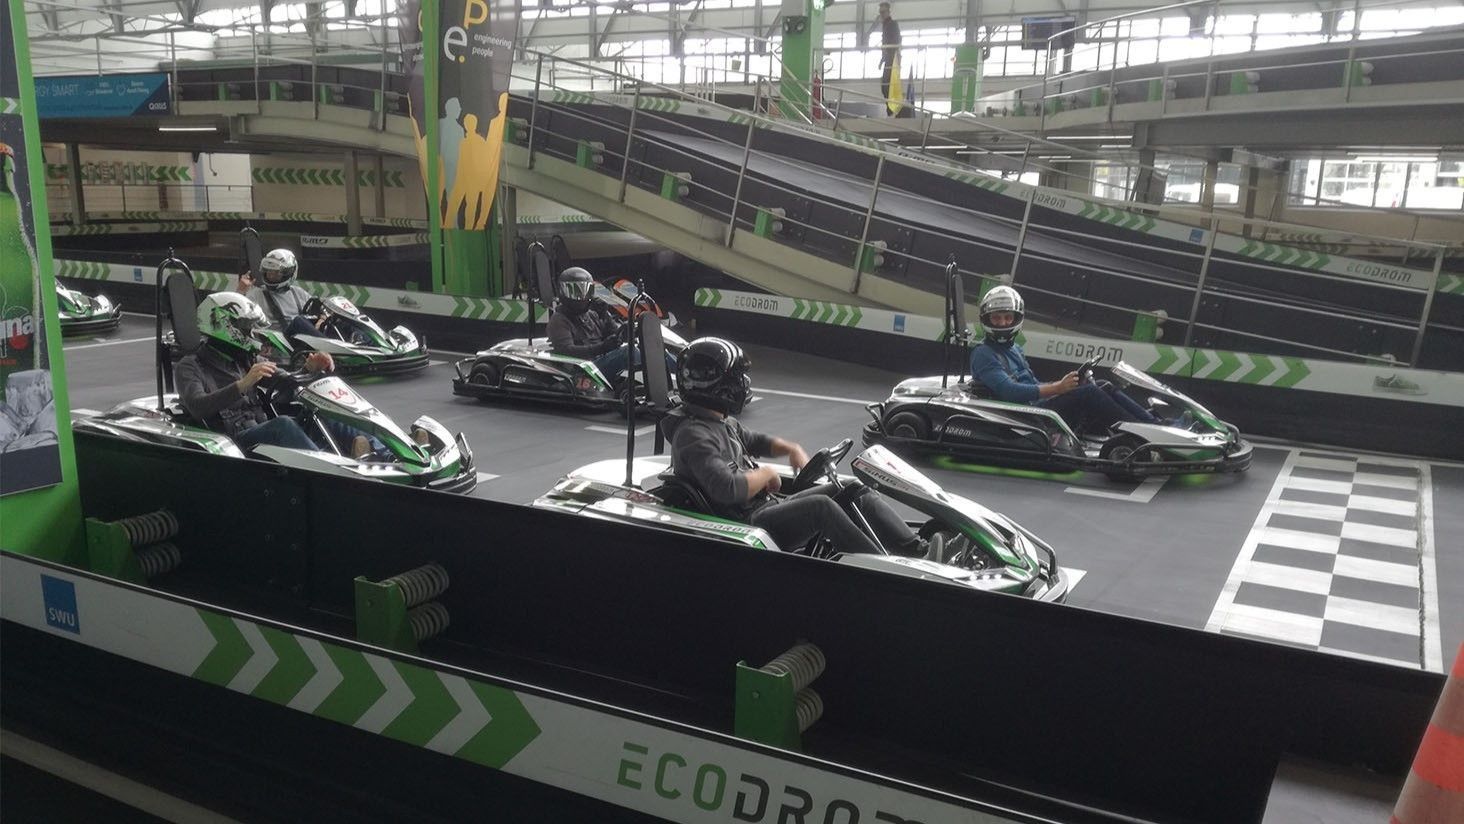 Group drives go-kart